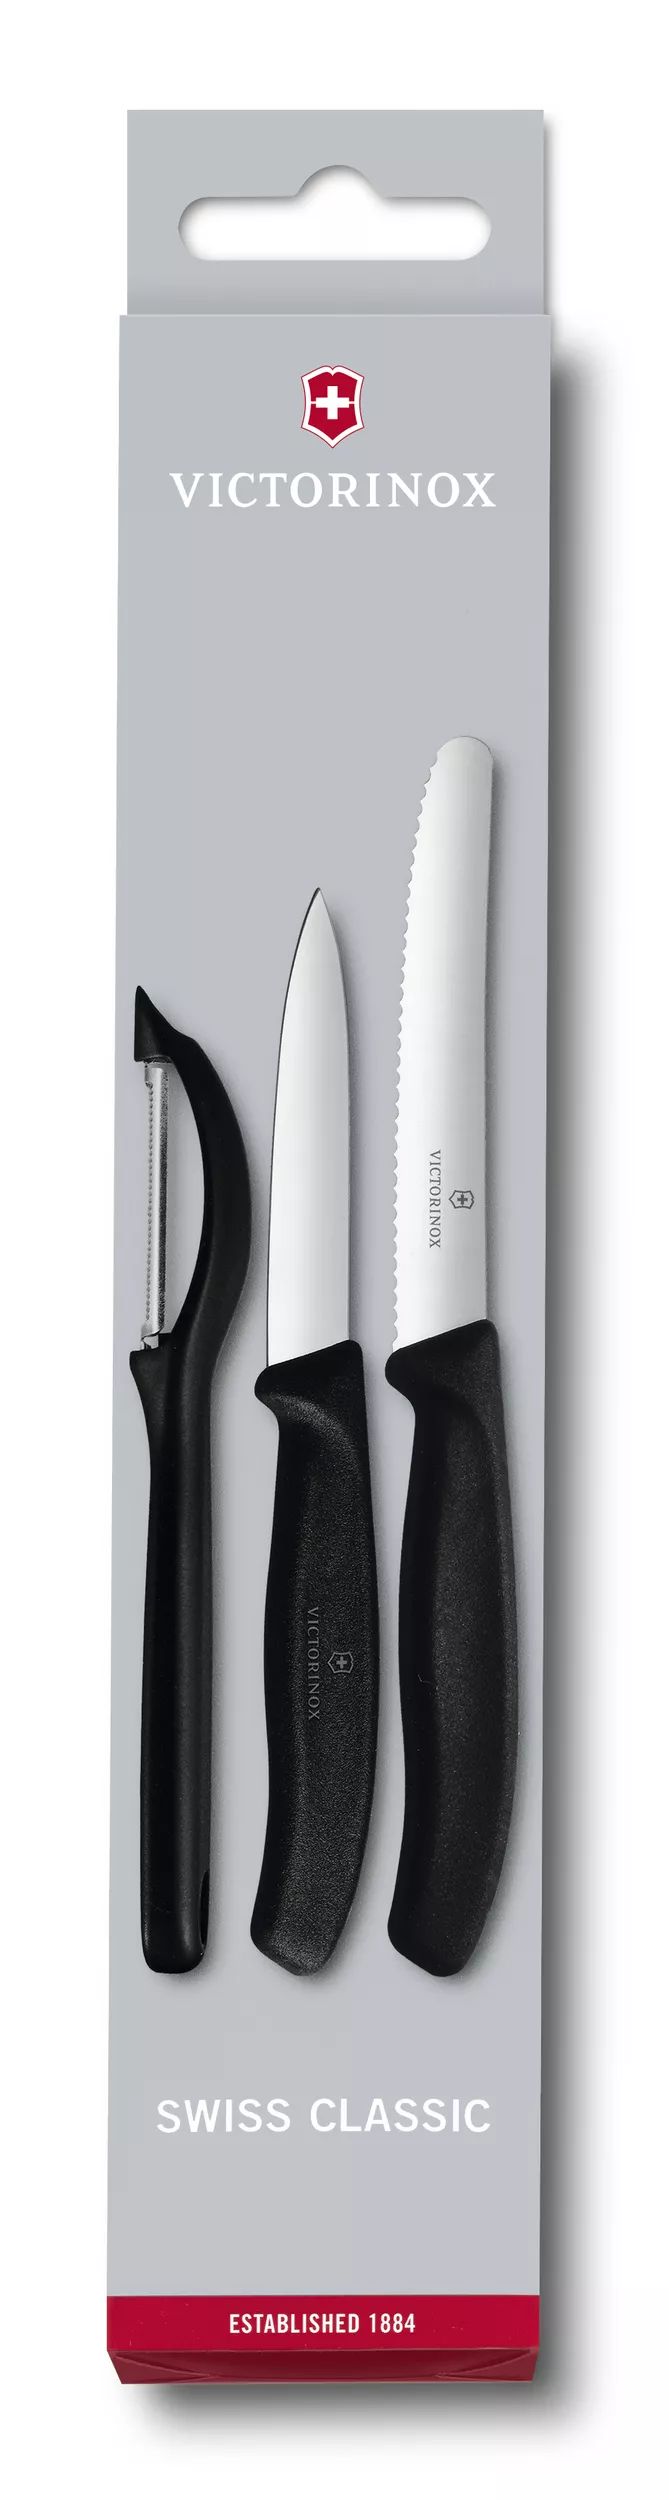 Swiss Classic 削皮刀具組與削皮器，3件裝-6.7113.31